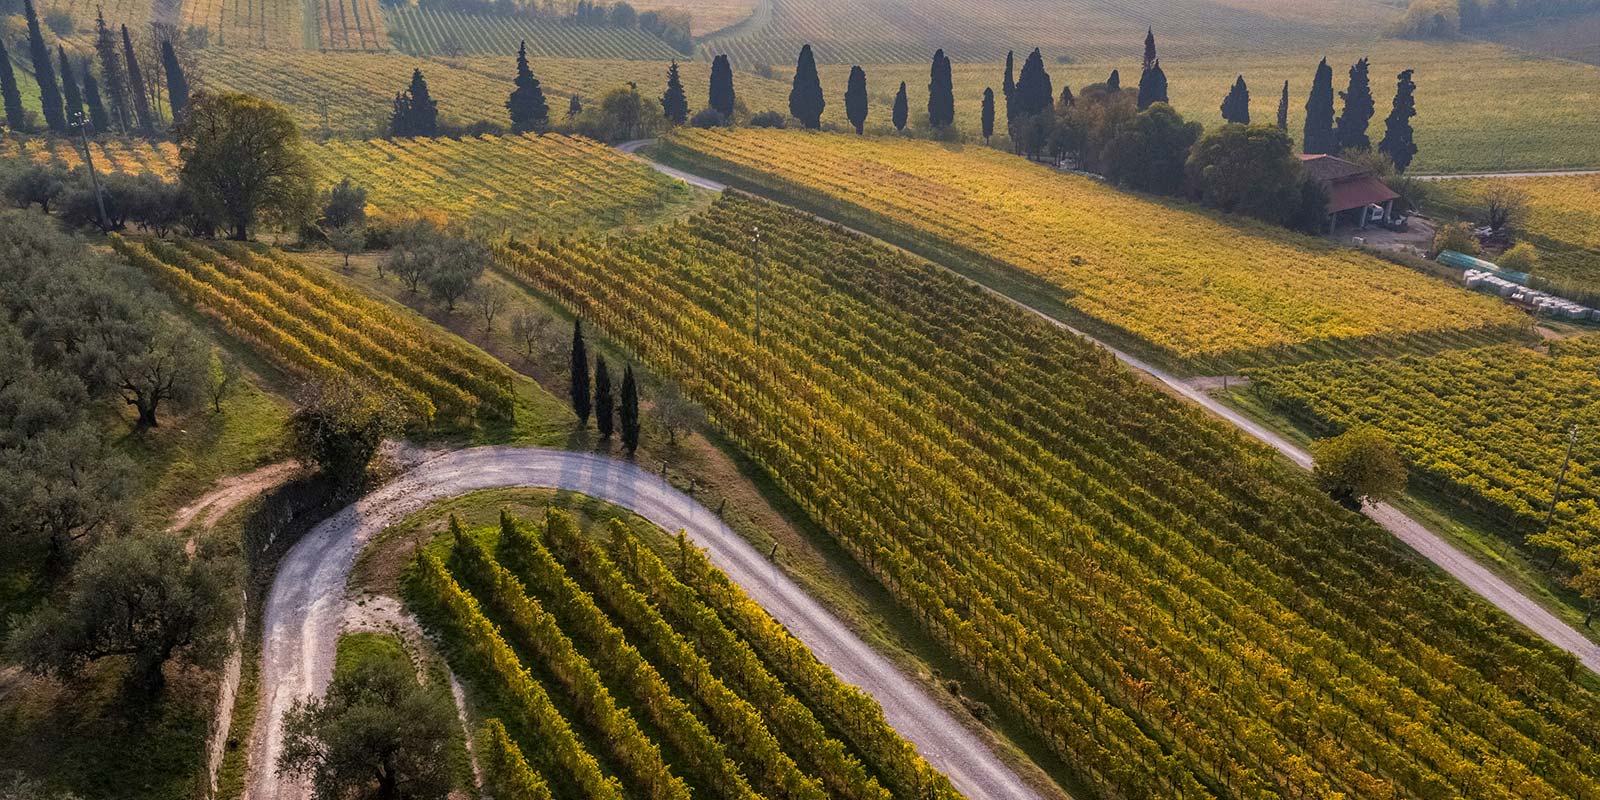 Immagine delle vigne dall'alto con cipressi e stradine